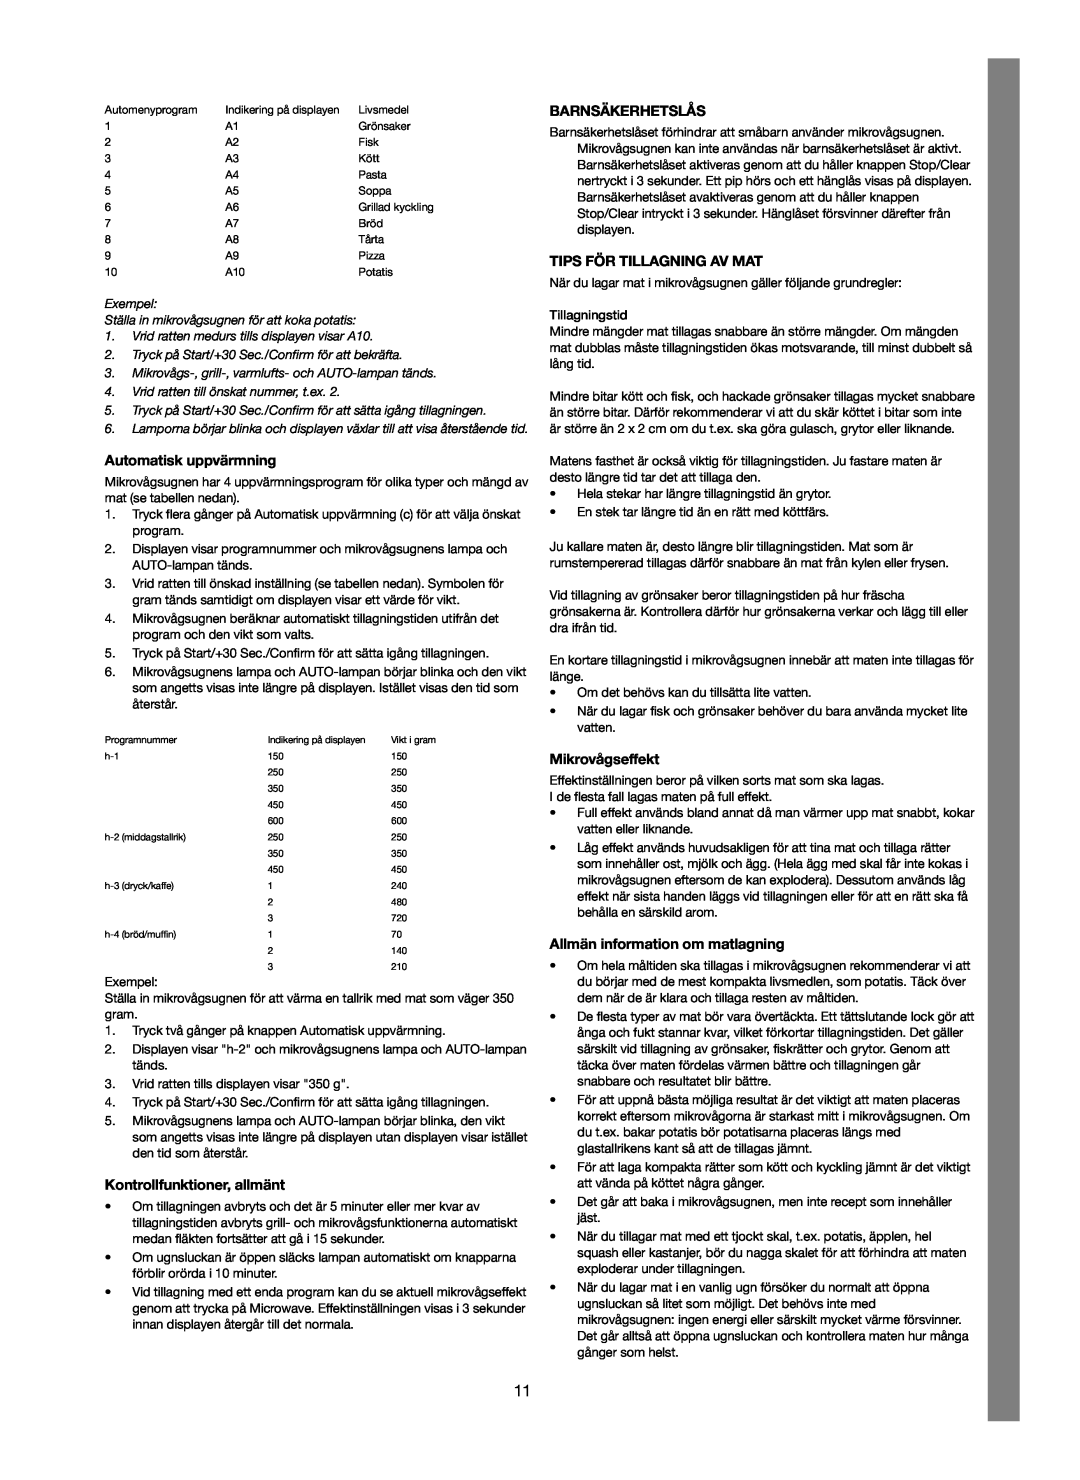 Melissa 253-012 manual Automatisk uppvärmning, Kontrollfunktioner, allmänt, Barnsäkerhetslås, Tips För Tillagning Av Mat 